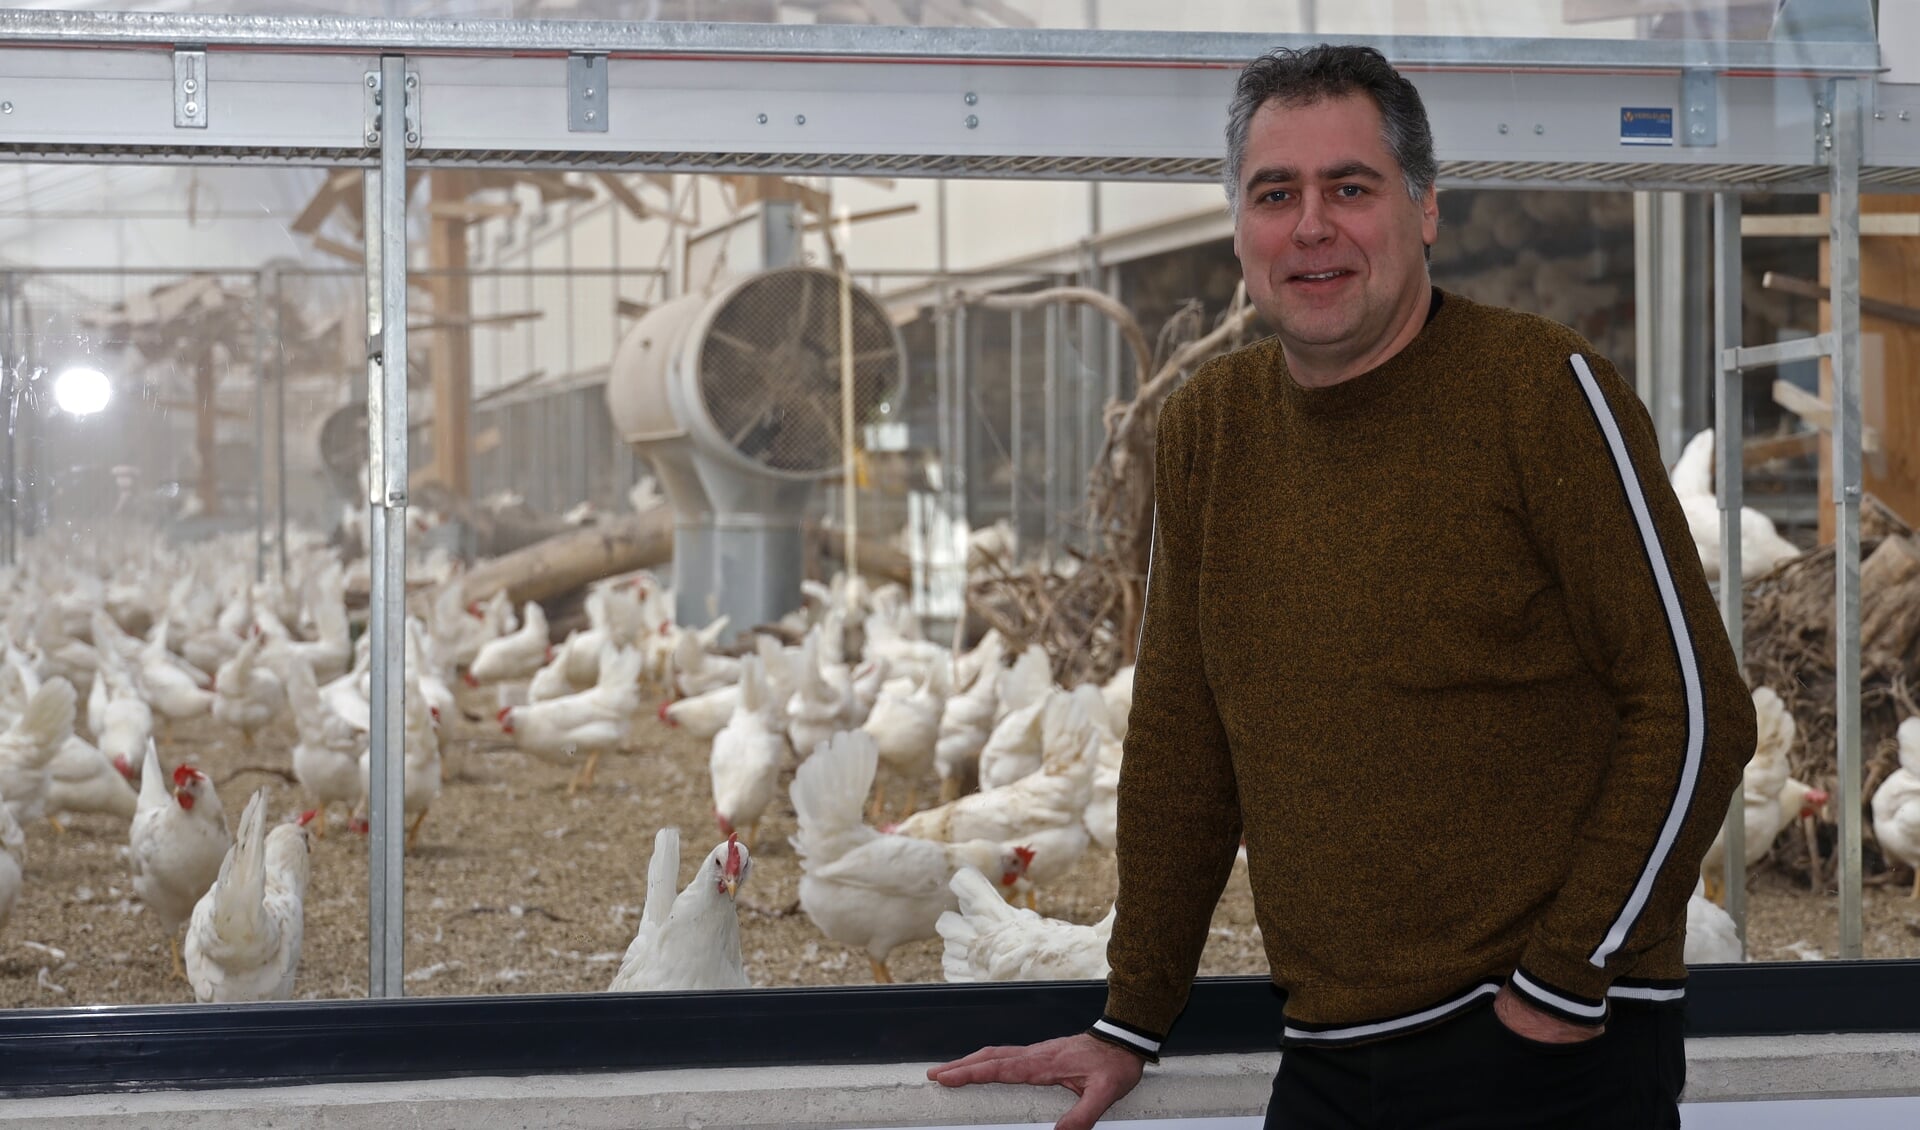 De gemeente Venray huisvest van alle 352 Nederlandse gemeenten de meeste varkens en kippen. 